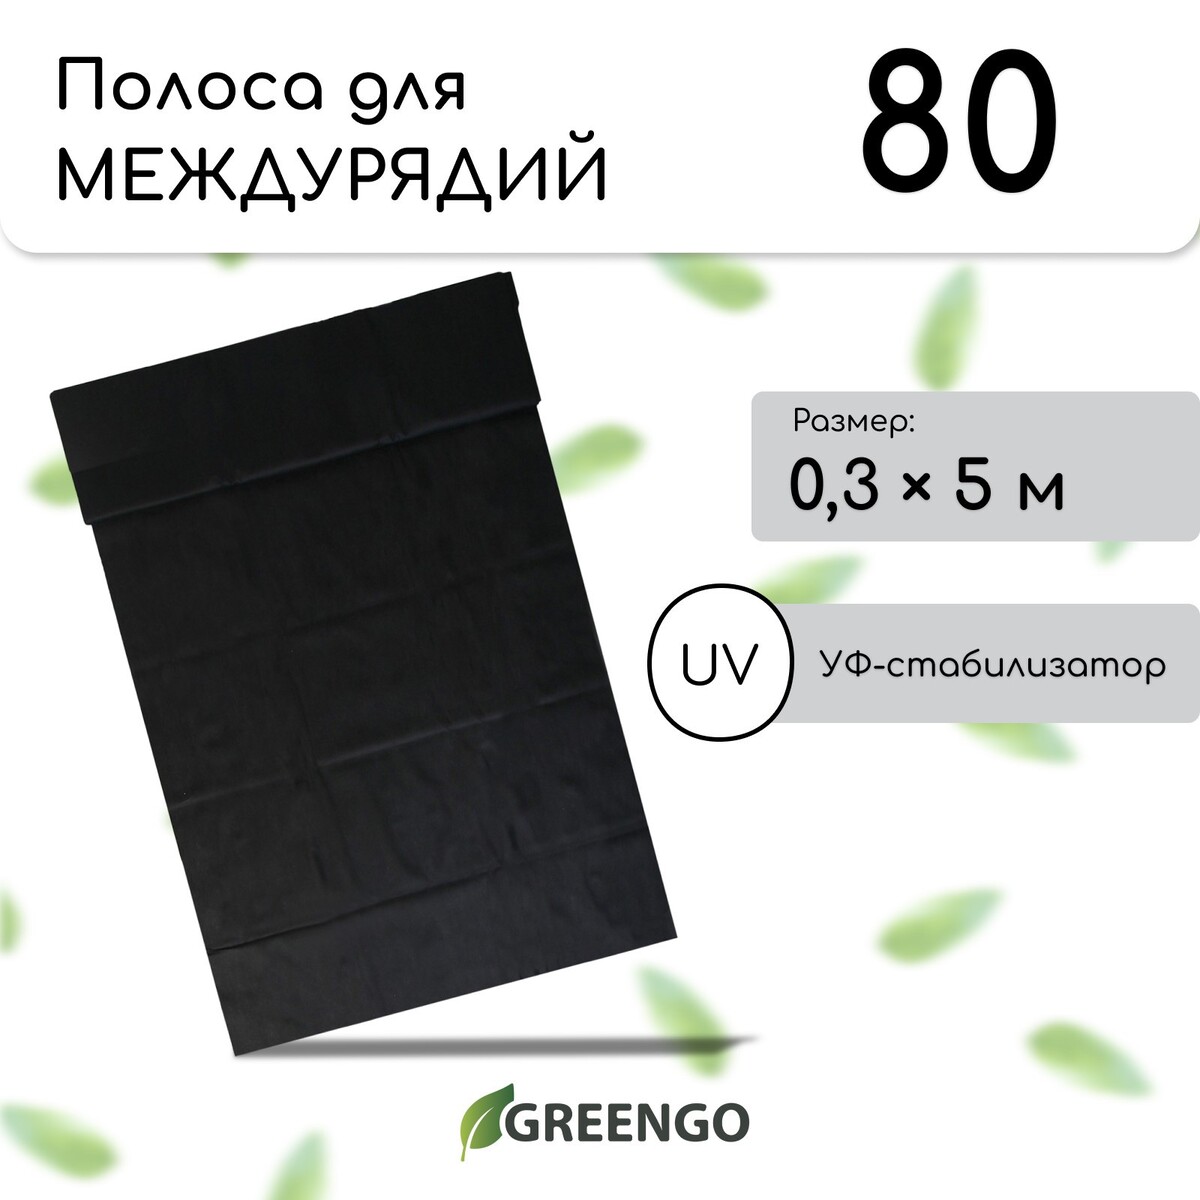 Полоса защитная для междурядий, 5 × 0,3, плотность 80 г/м², спанбонд с уф-стабилизатором, черная, greengo, эконом 20%